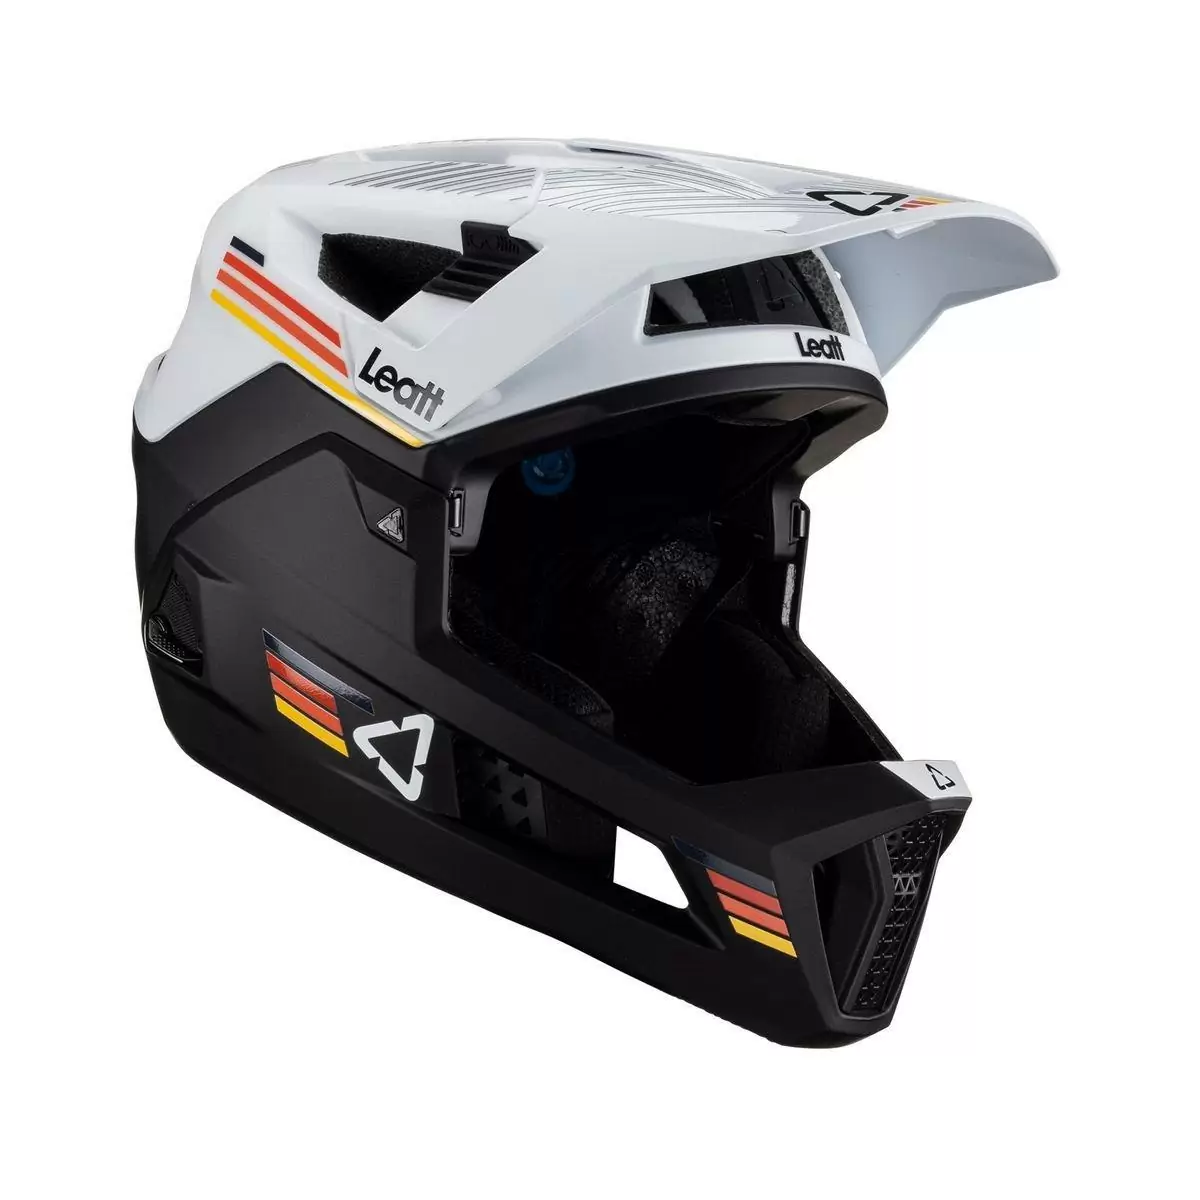 Full-Face Helmet MTB 4.0 Enduro Removable Chinguard White/Black Size S (51-55cm) #3